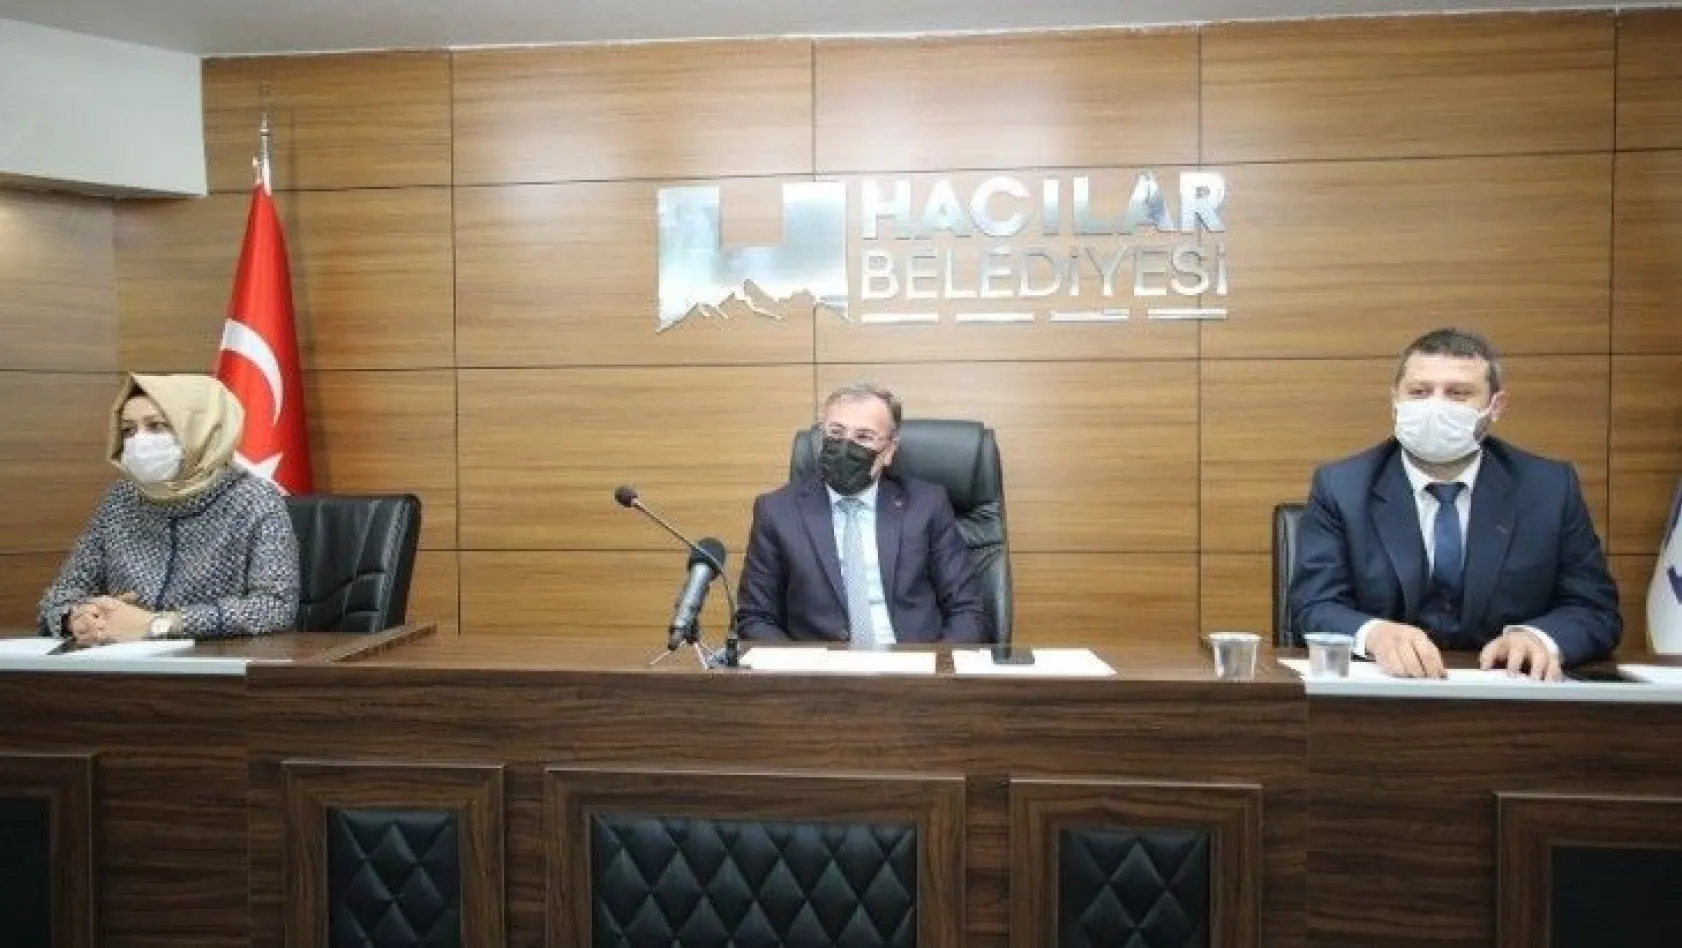 Hacılar Belediyesi Şubat ayı Meclis Toplantısı yapıldı